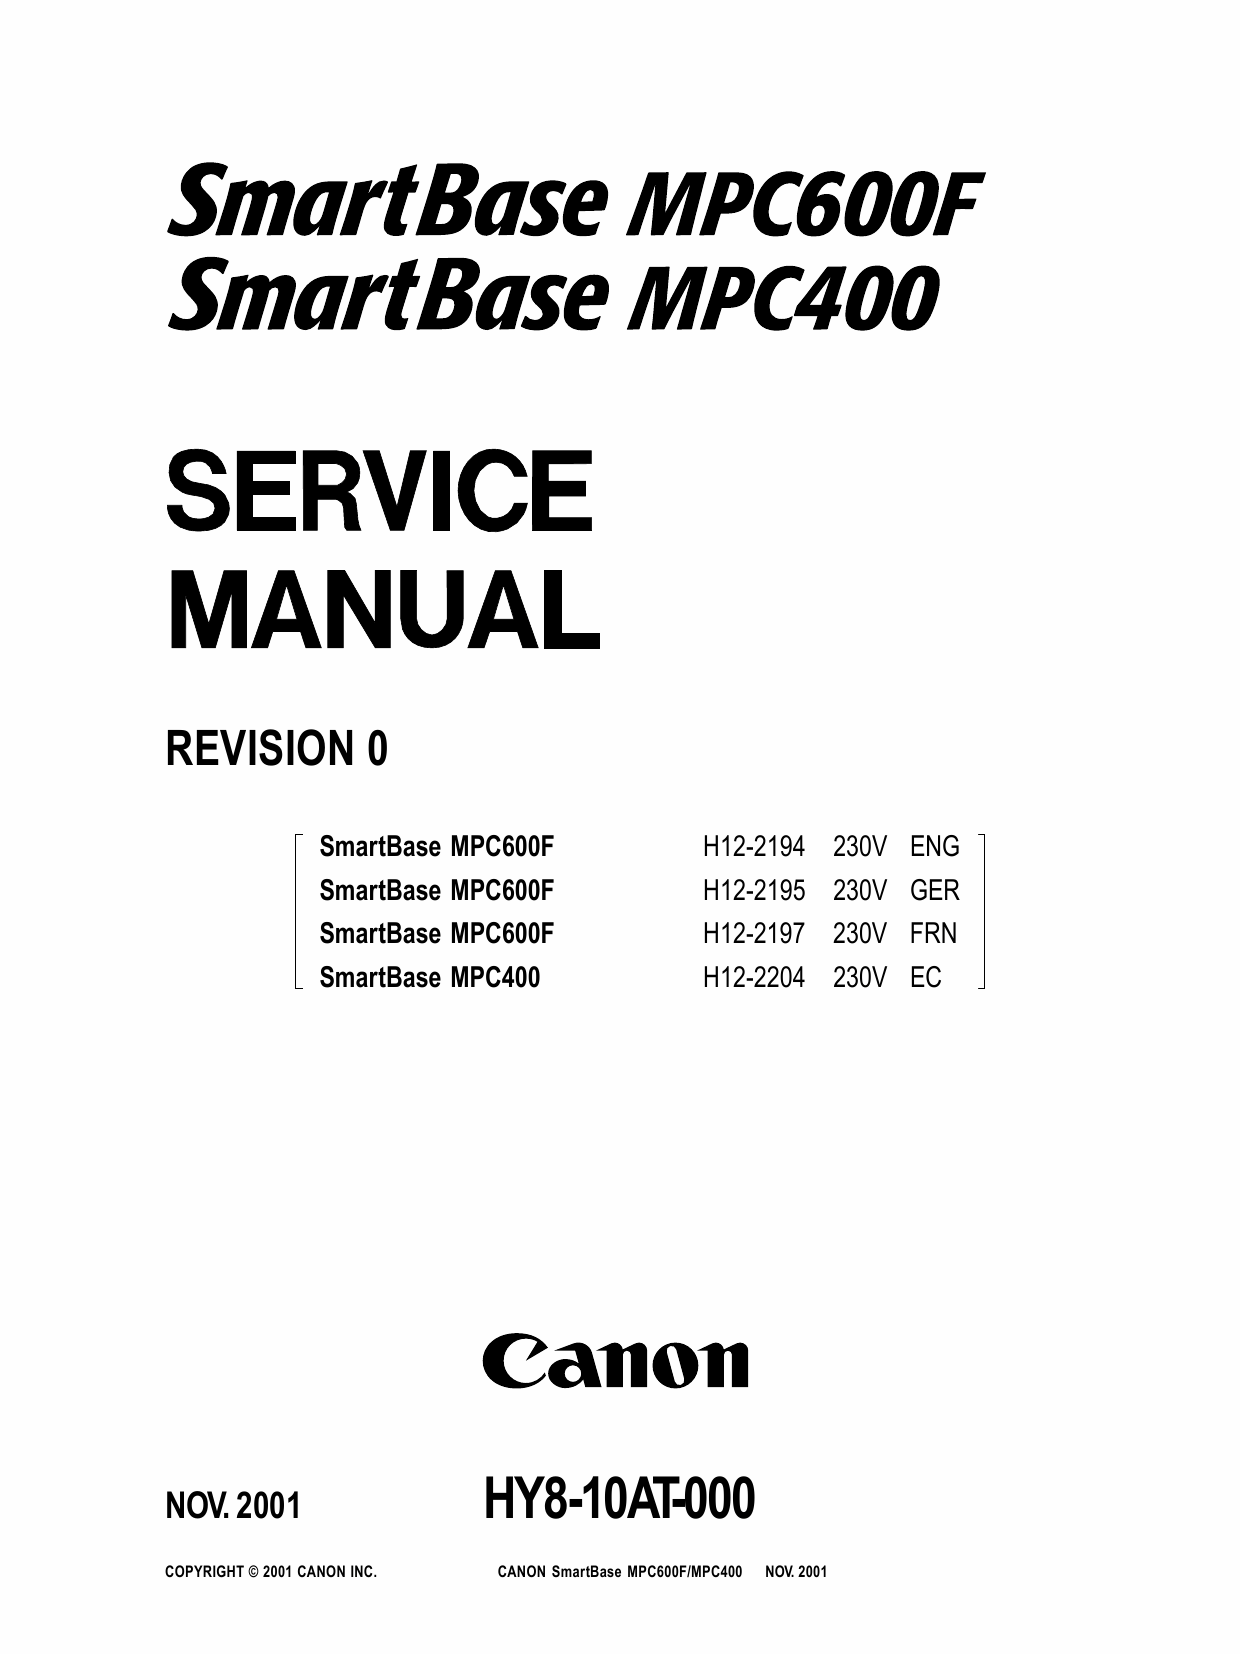 Canon SmartBase MPC600F MPC400 Service Manual-1